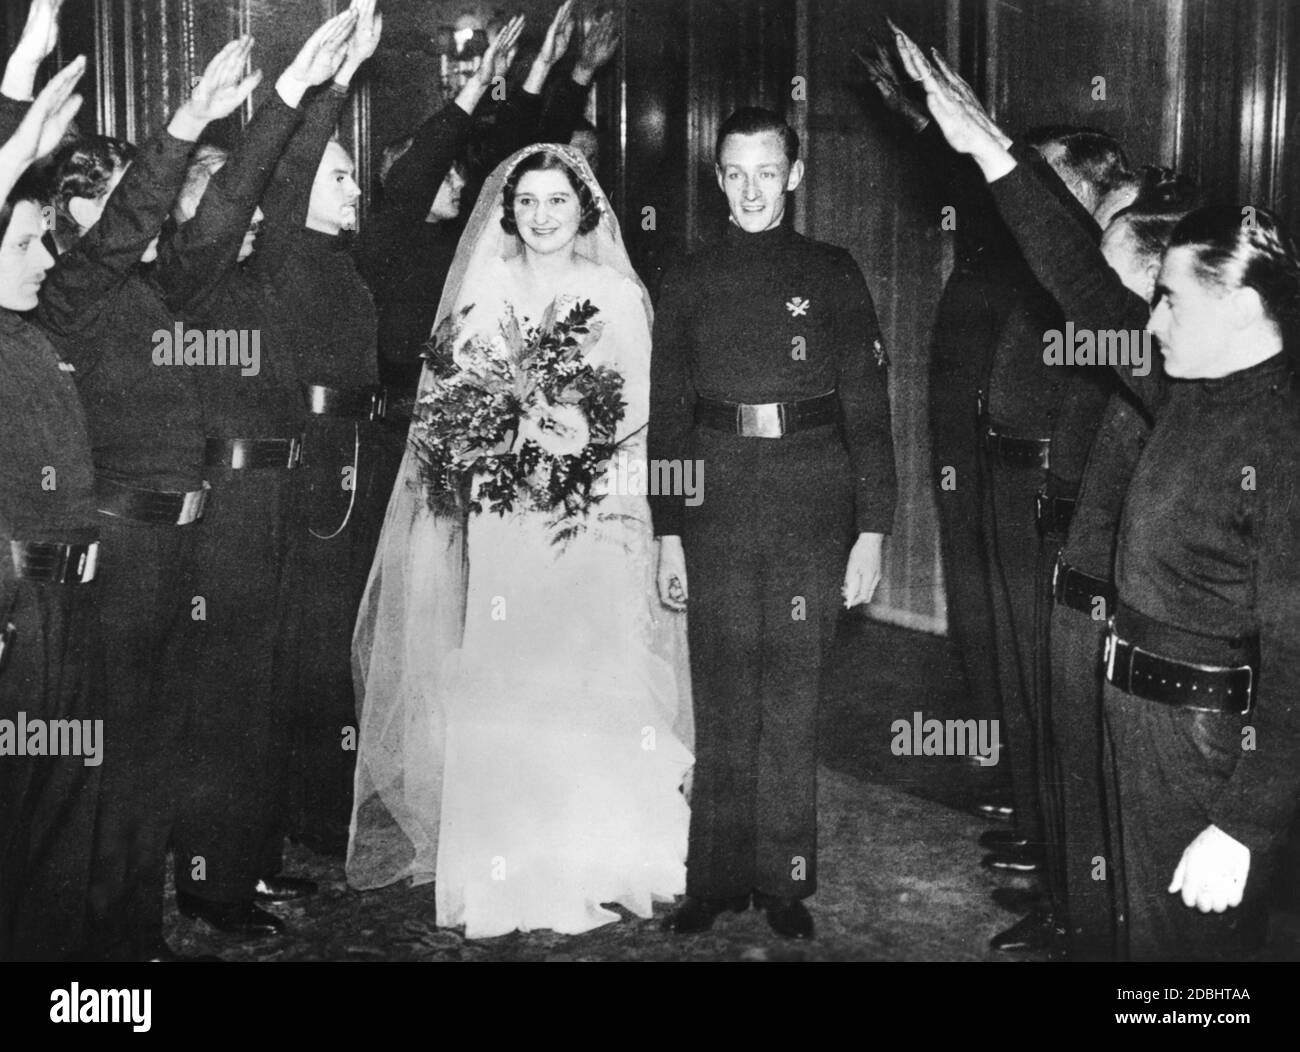 Hochzeit von Ian Hope Dundas, Stabschef der British Union of Fascists (BUF), und Pamela Ernestine Dorman in der St. Michael's Church in London. Das Paar verlässt die Kirche nach der Hochzeitszeremonie durch einen Ehrenwächter von Parteimitgliedern. Stockfoto